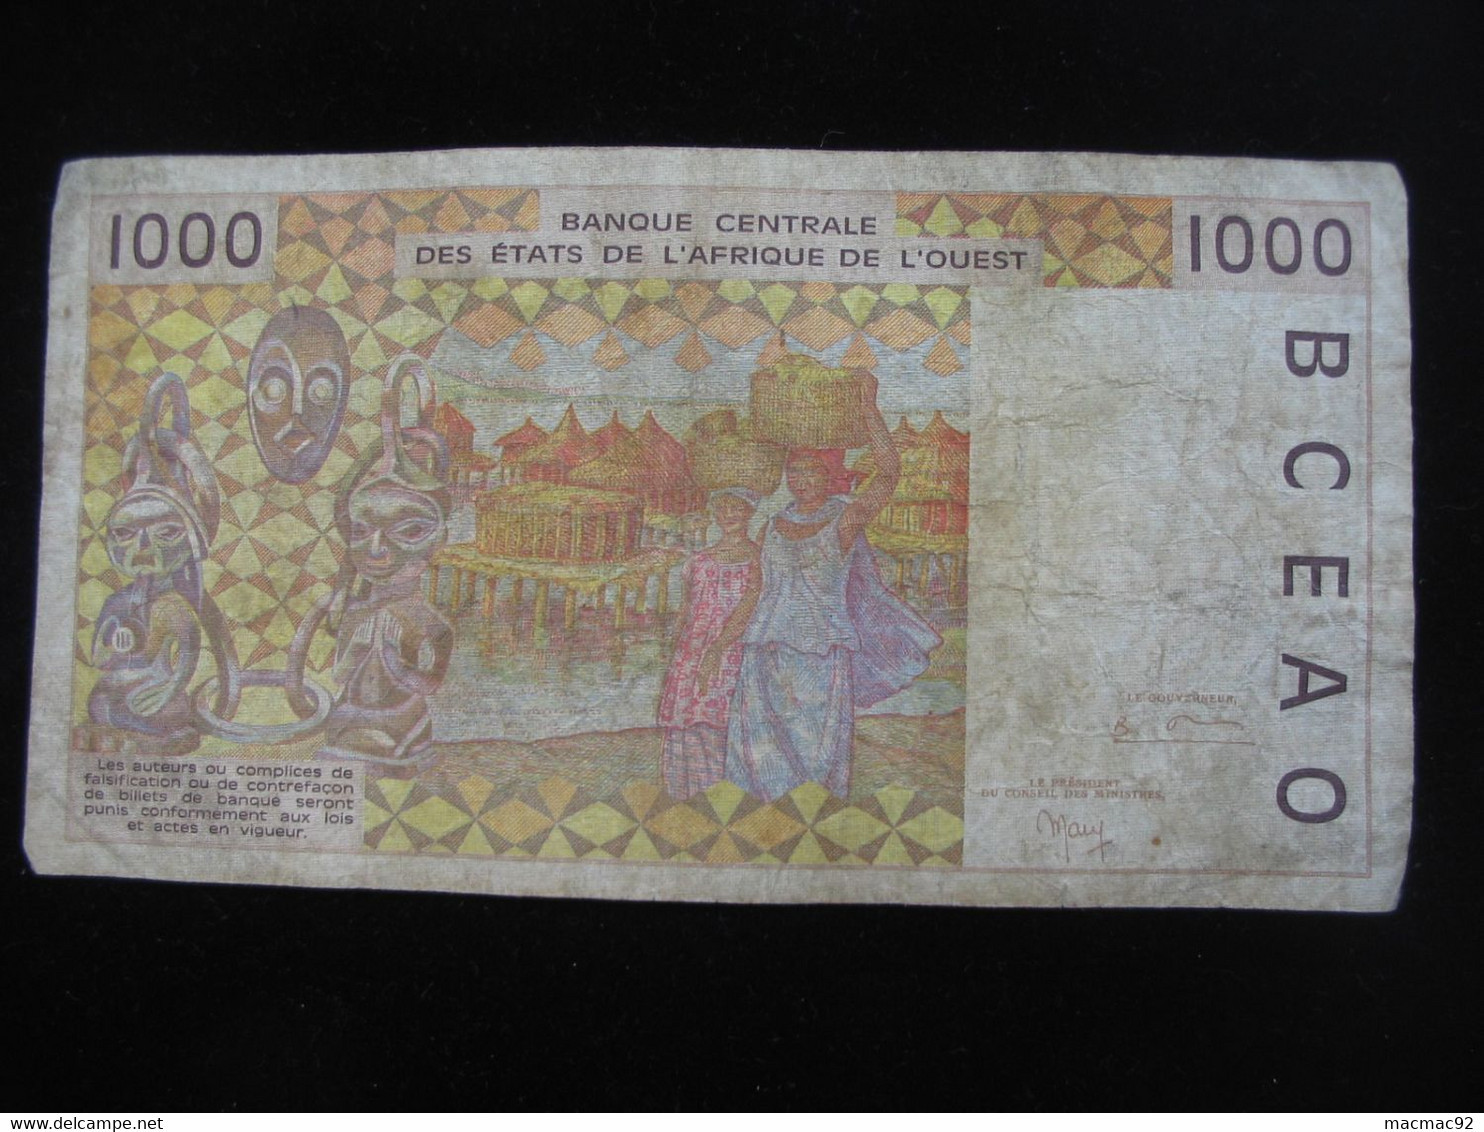 COTE D'IVOIRE - 1000 Francs  1999 A - Banque Centrale Des états De L'Afrique De L'ouest  **** ACHAT IMMEDIAT **** - Costa D'Avorio